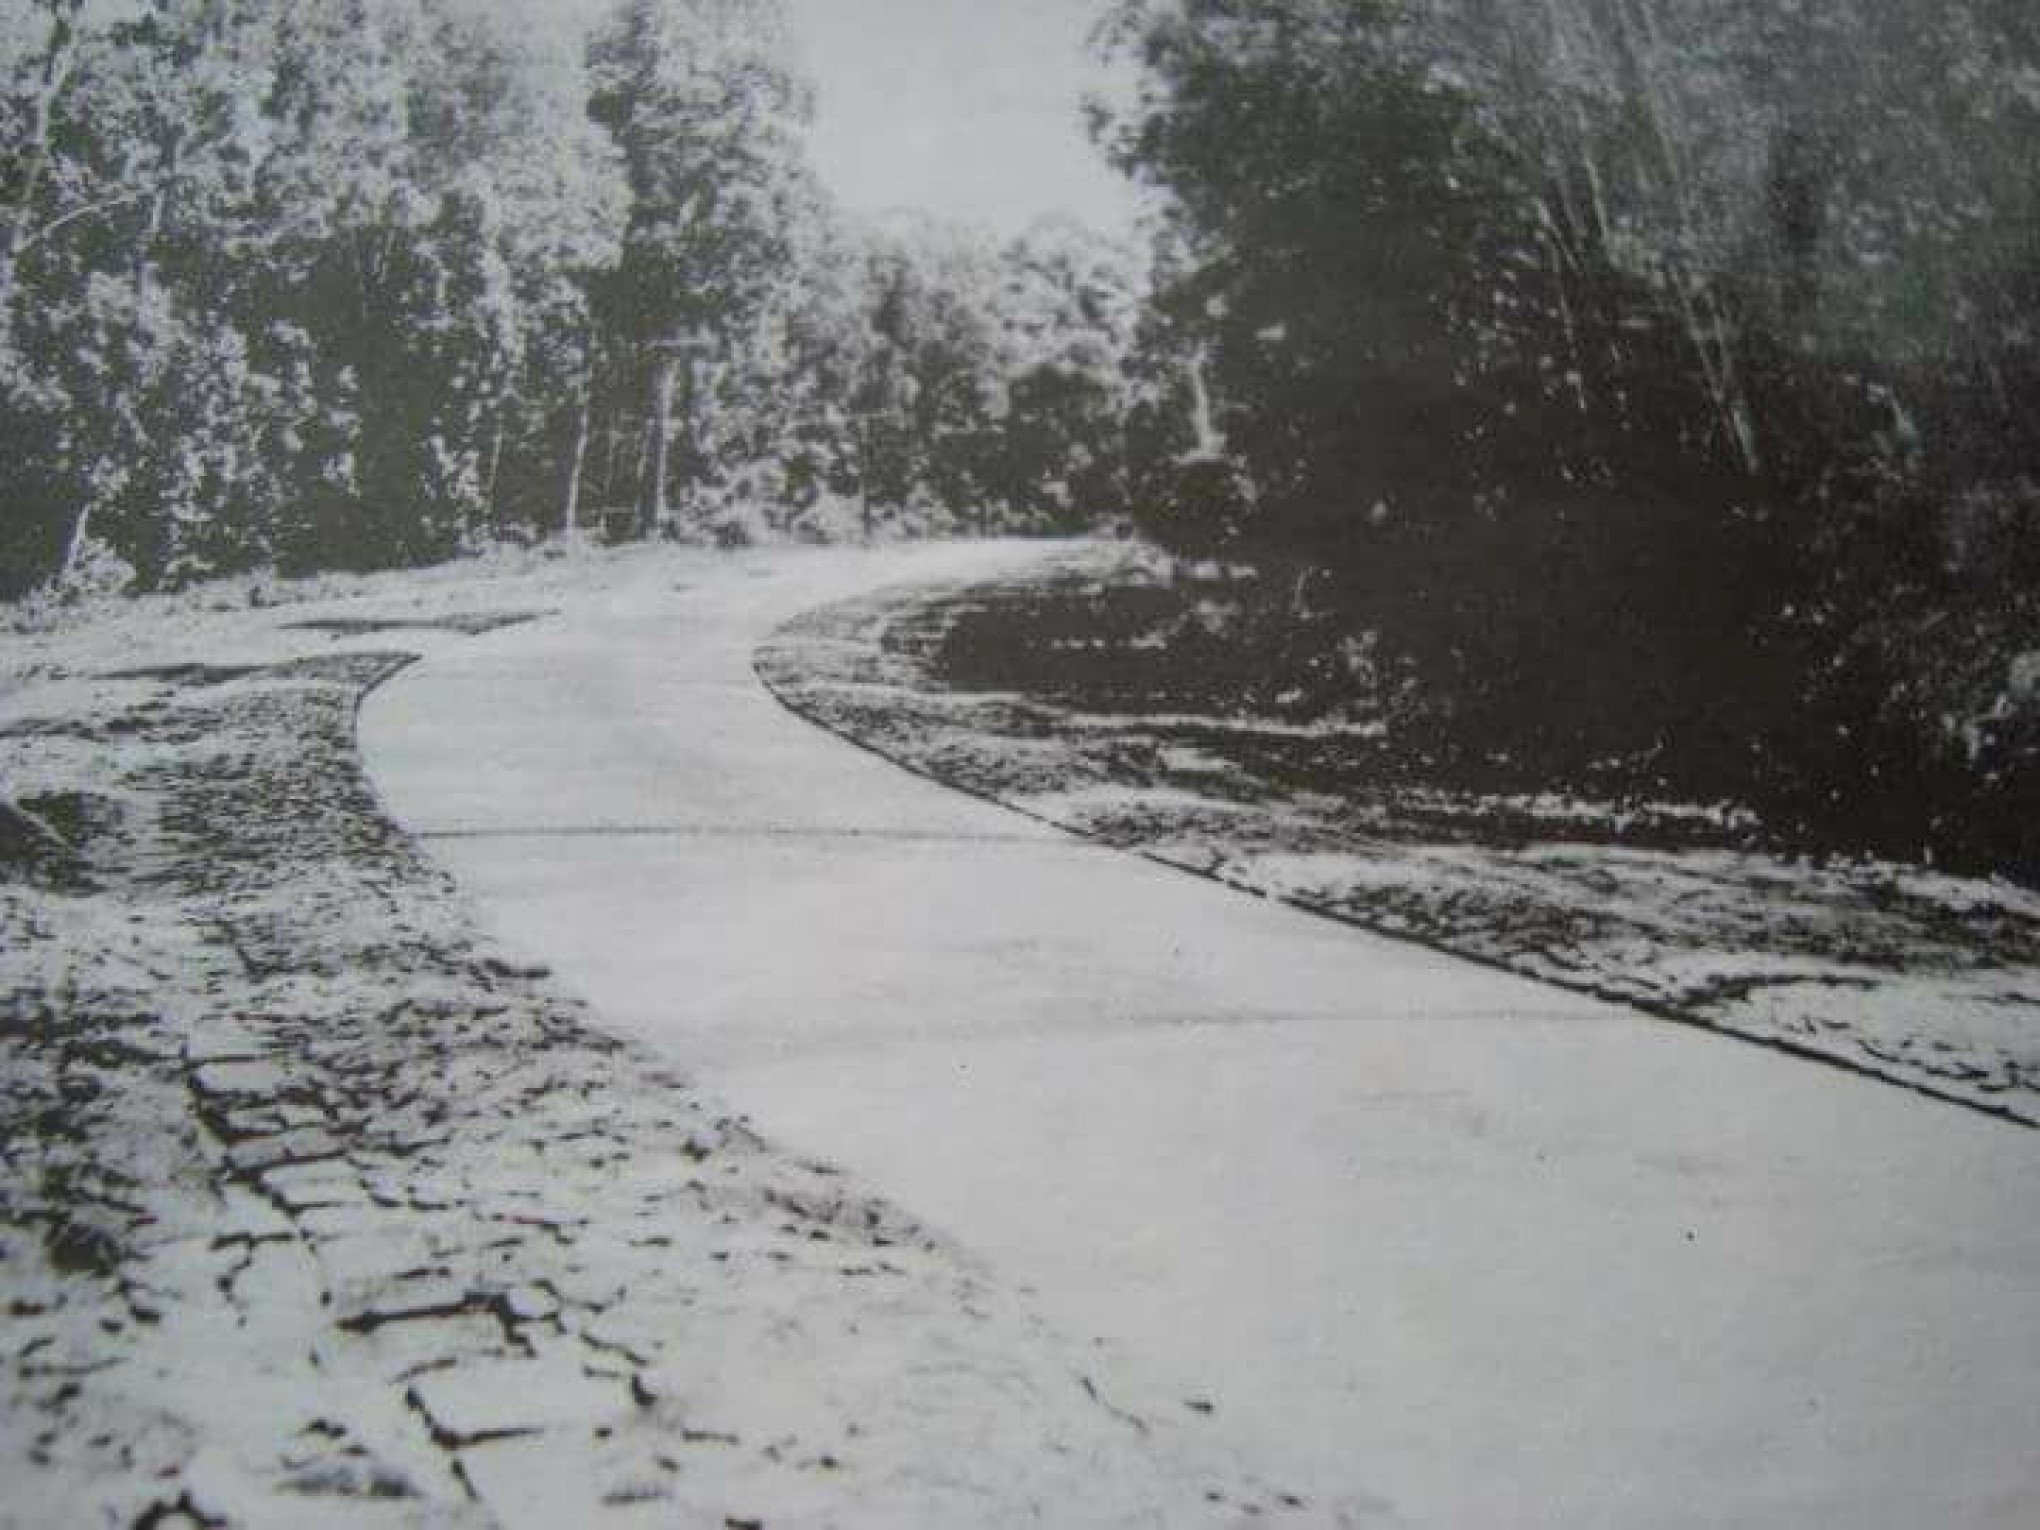 Primeira estrada pavimentada do RS fica na região e completa 90 anos hoje